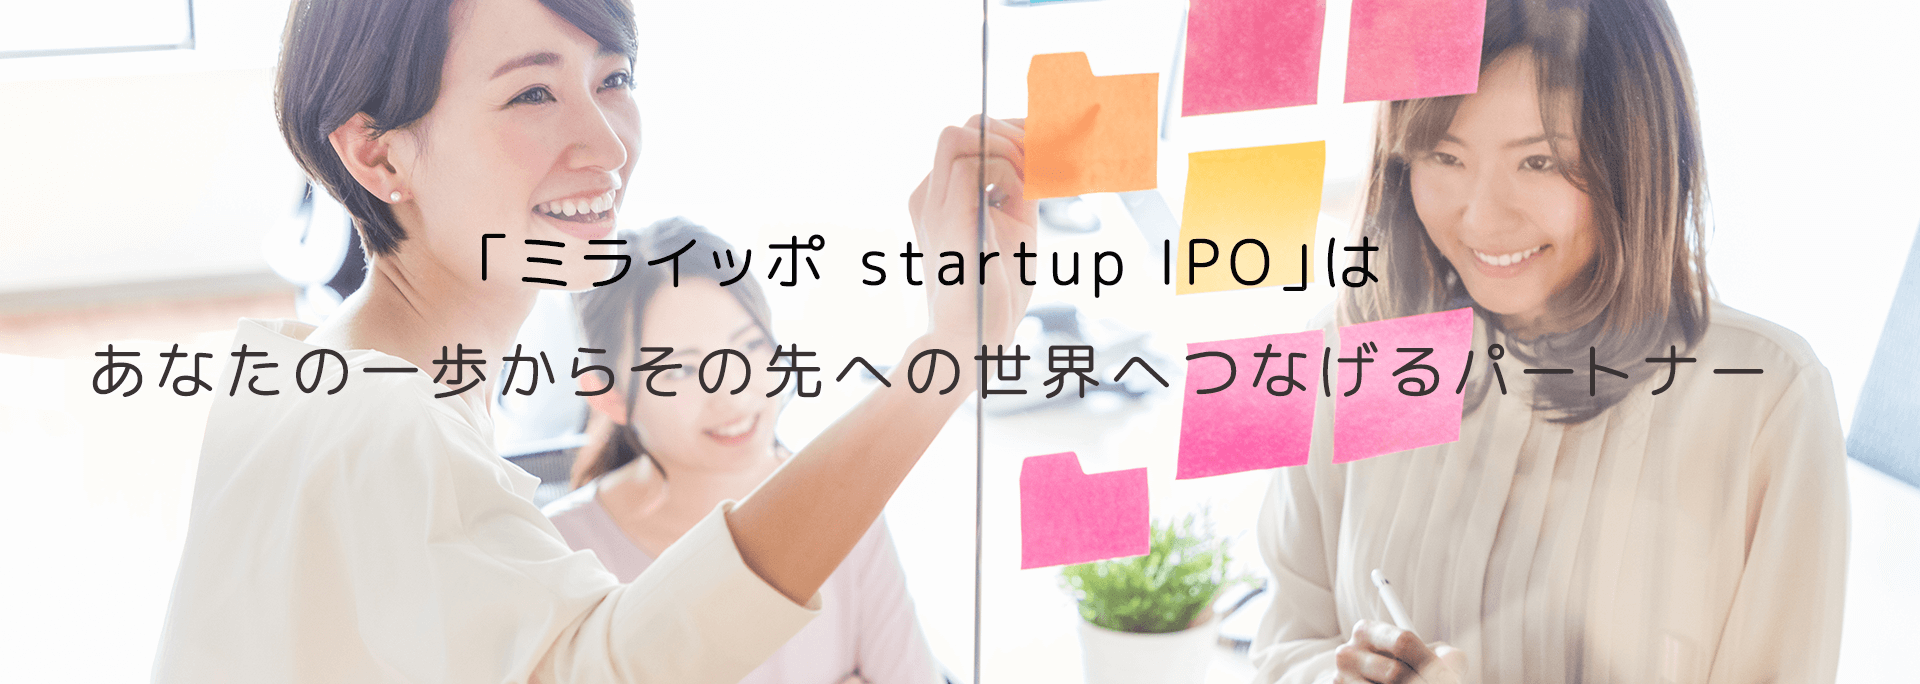 「ミライッポ startup IPO」はあなたの一歩からその先への世界へつなげるパートナー